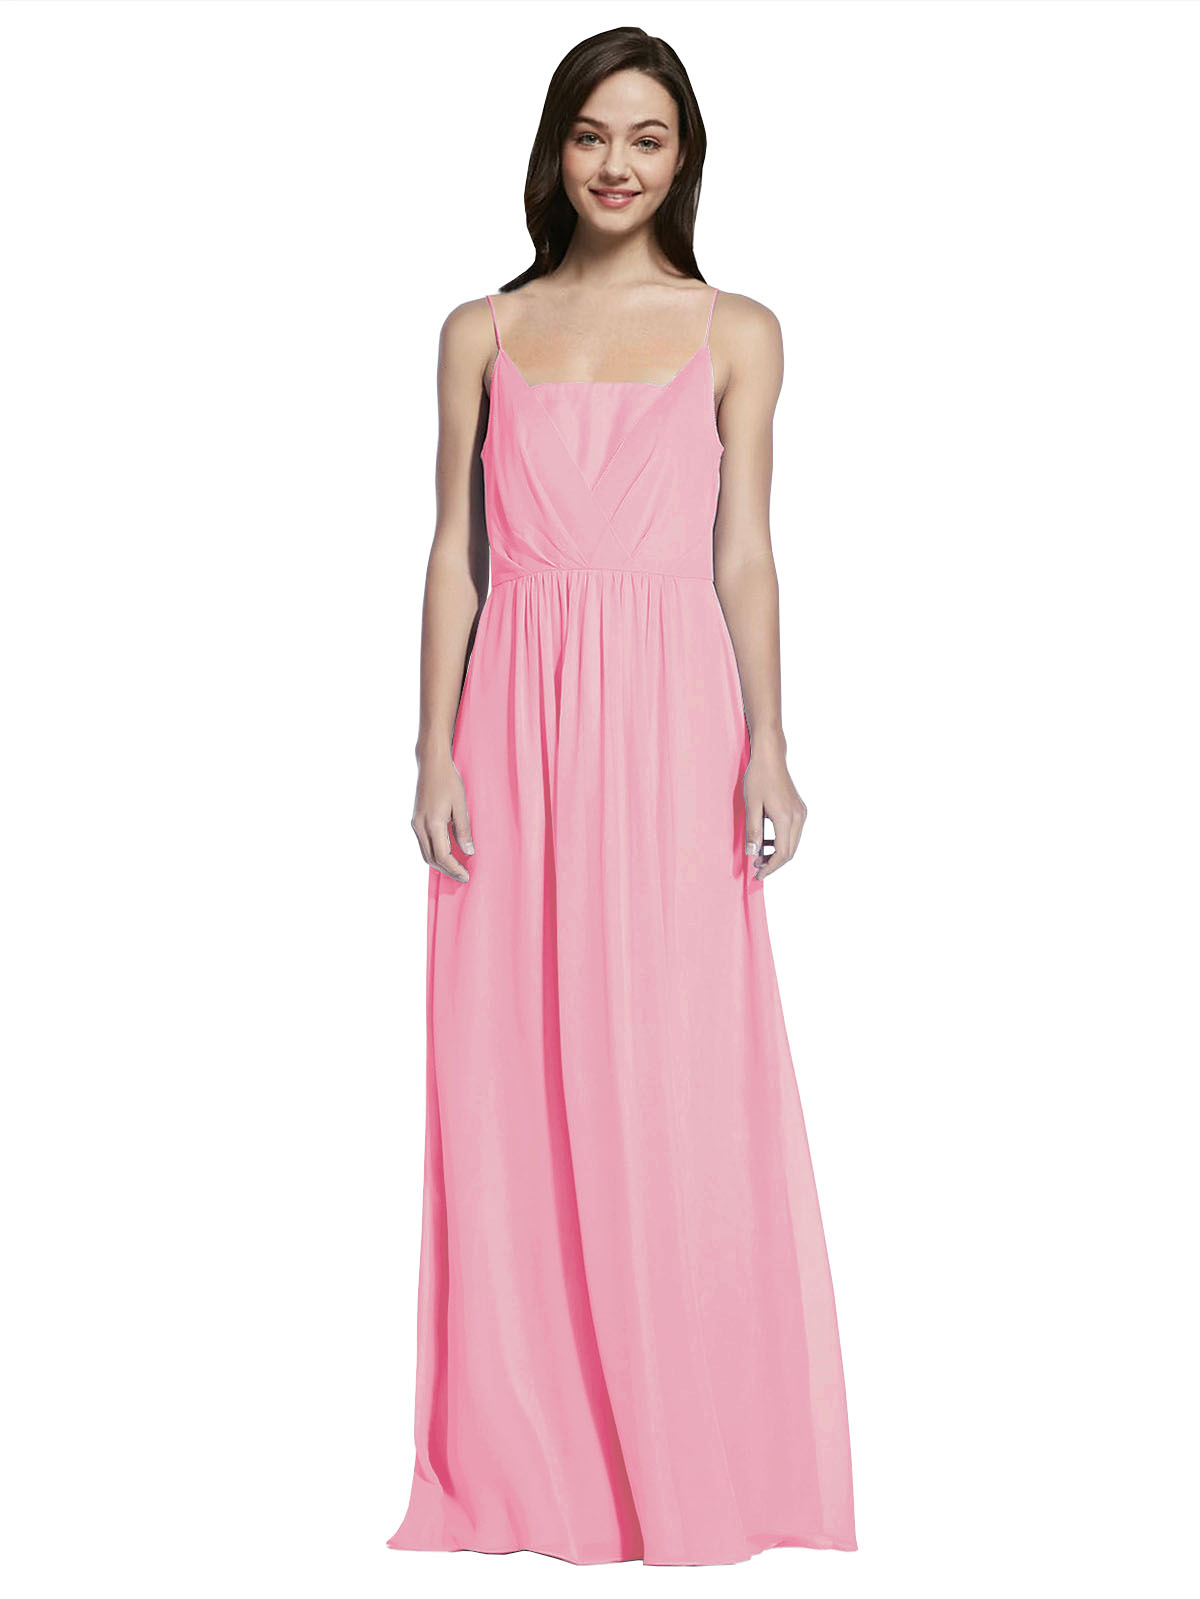 Long A-Line Spaghetti Straps Sleeveless Hot Pink Chiffon Bridesmaid Dress Owen